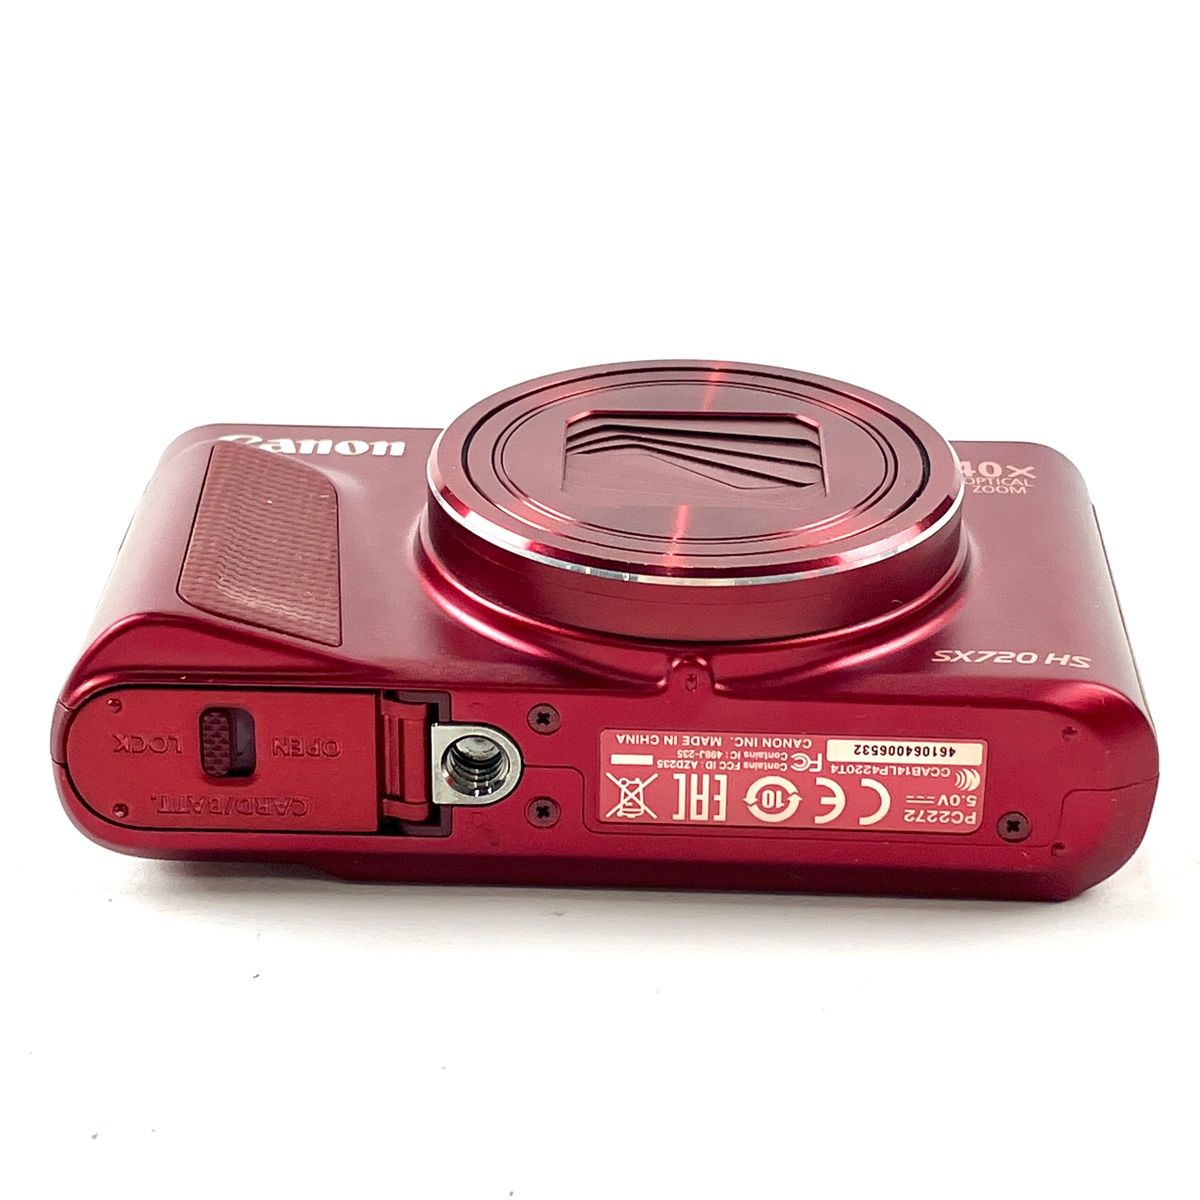 キヤノン Canon PowerShot SX720HS レッド 赤 コンパクトデジタル